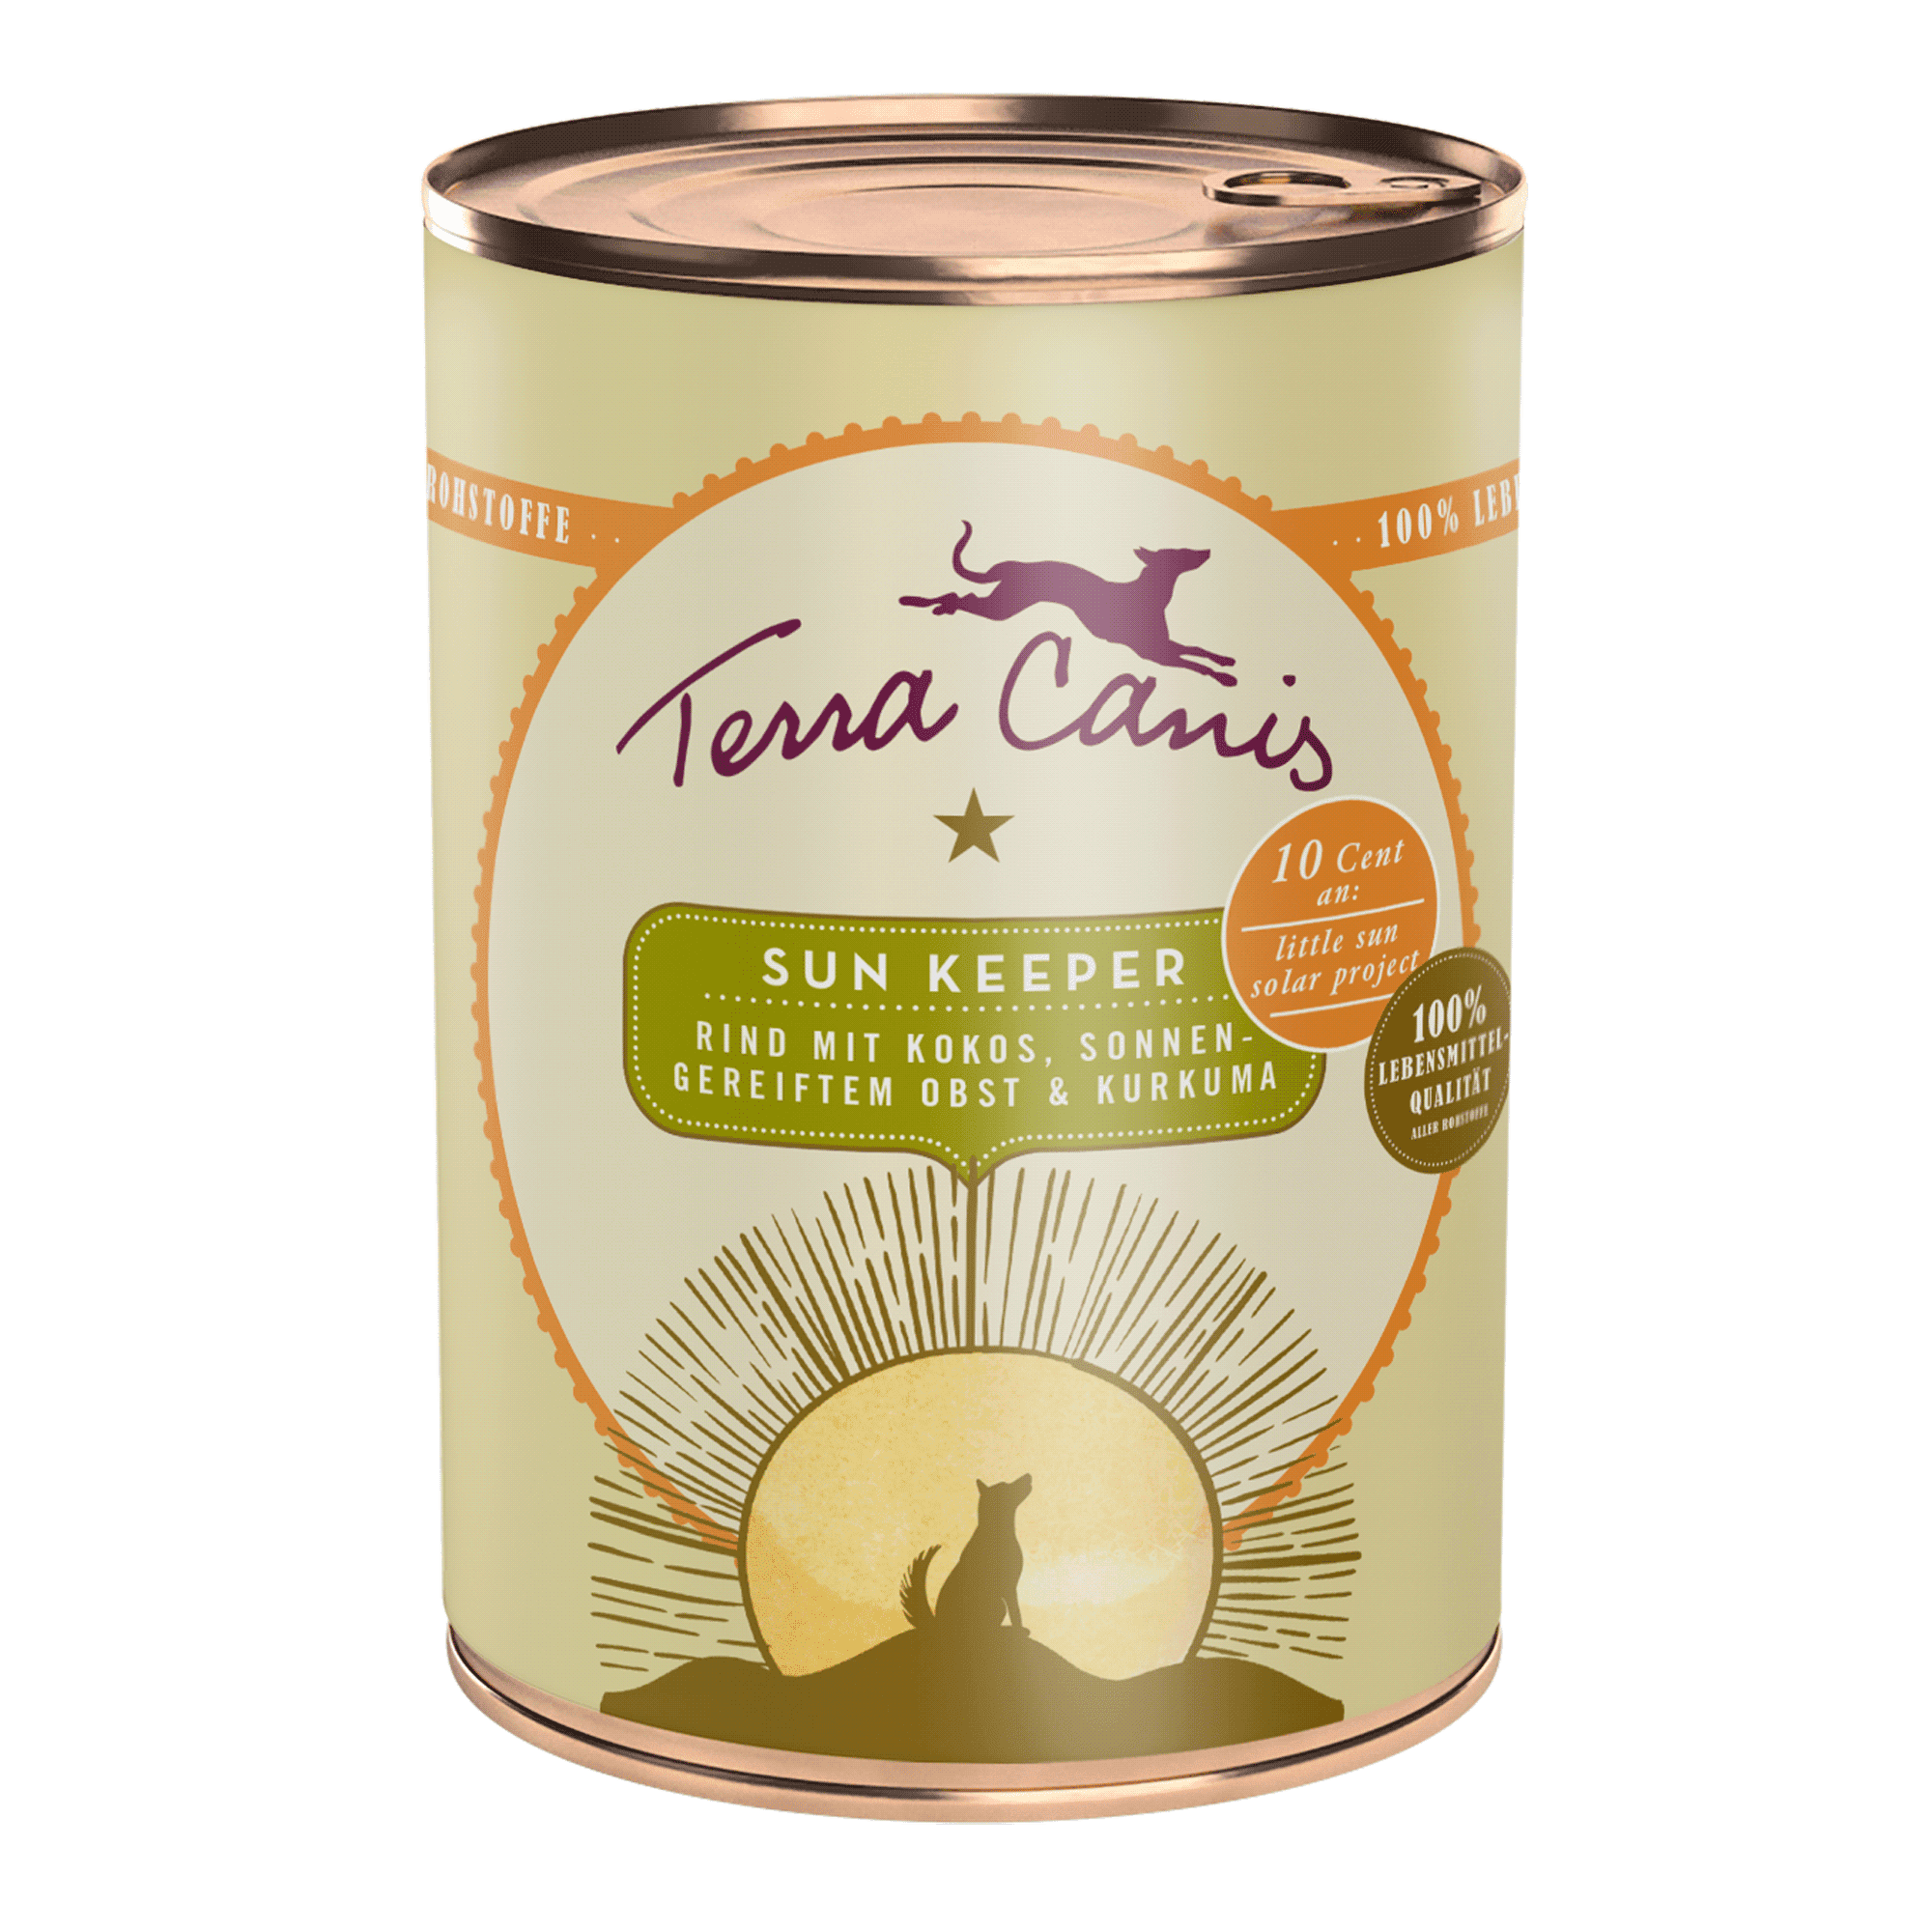 Terra Canis | Sun Keeper - Rind mit Kokos sonnengereiftem Obst & Kurkuma